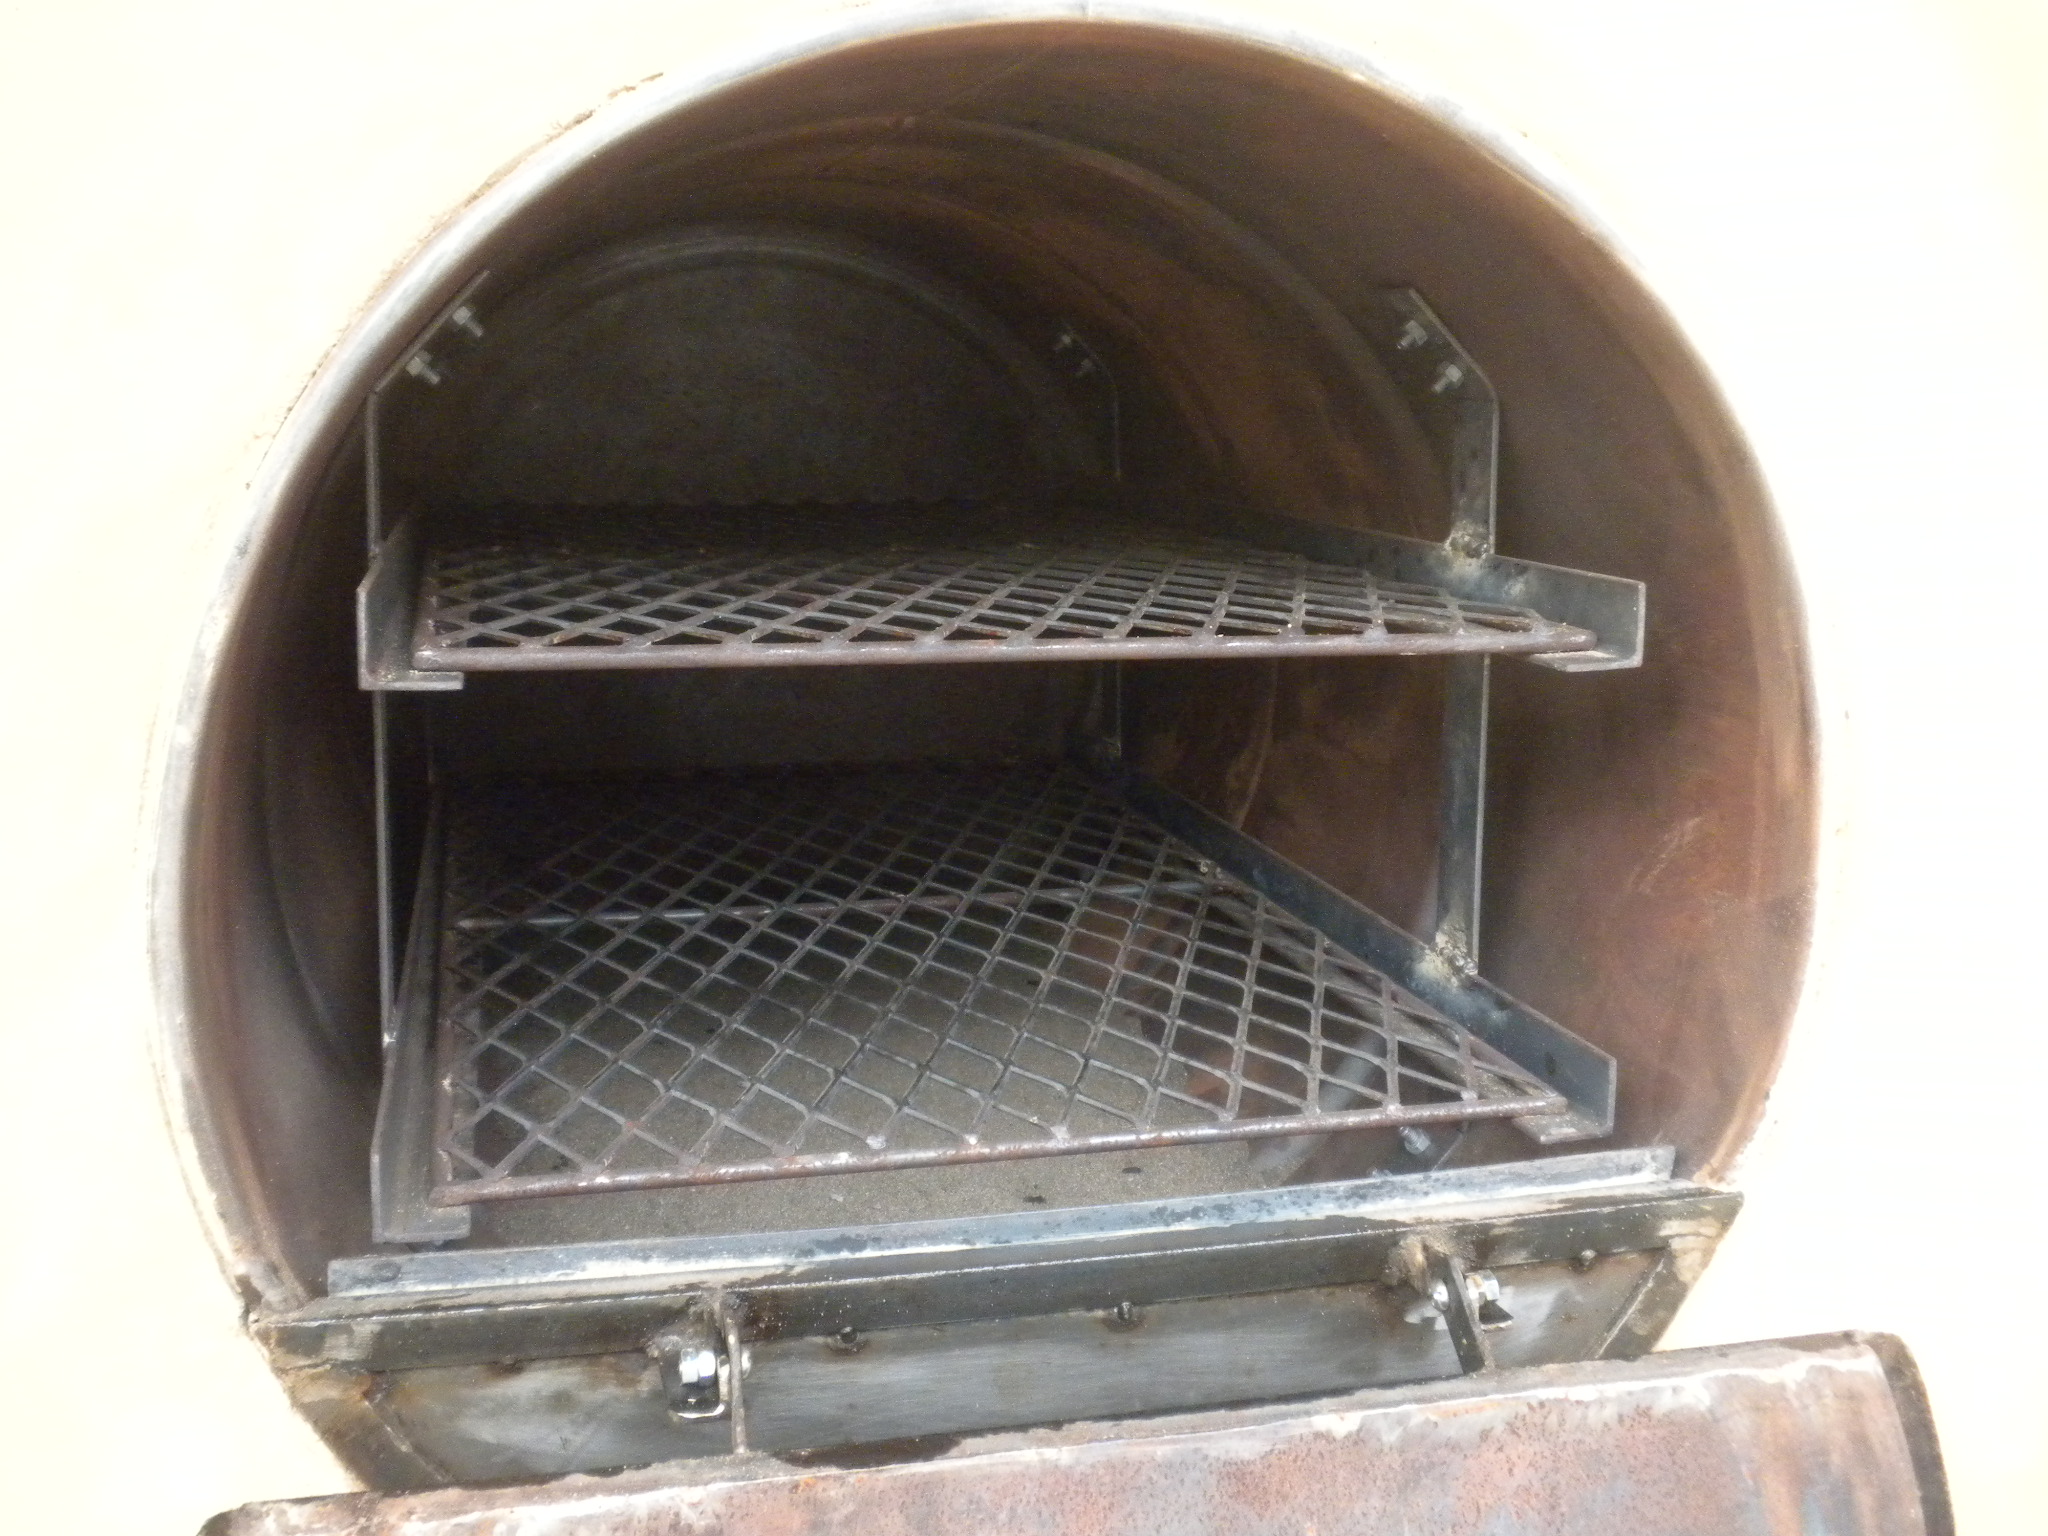 Rocket-Fired Griddle Oven - Firespeaking